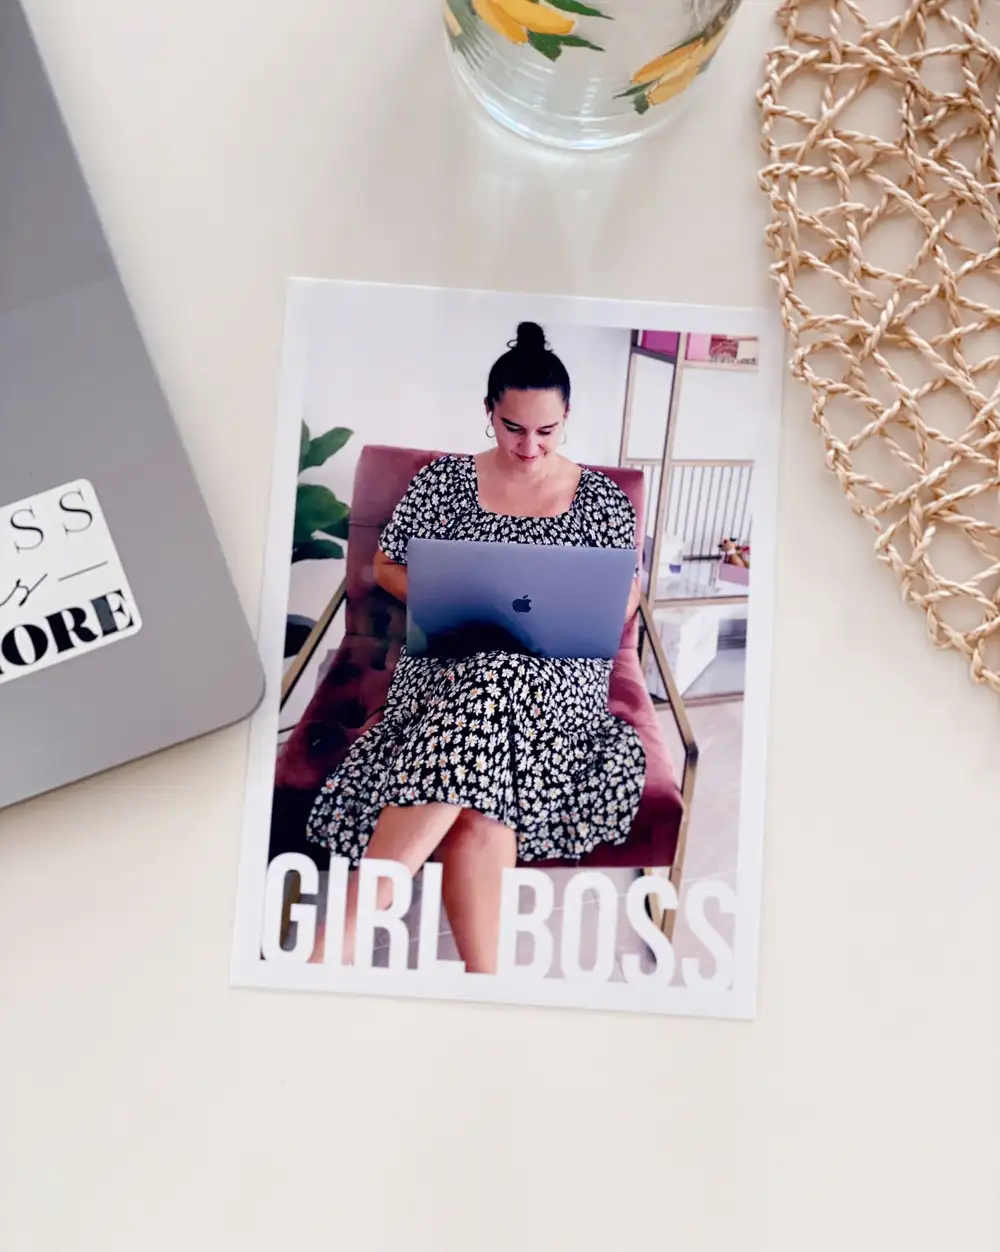 Girl Boss İş Kadınına Motivasyon Tebrik Mesajlı Hediye Kişiye Özel Fotoğraf Baskısı 13 x 18 cm